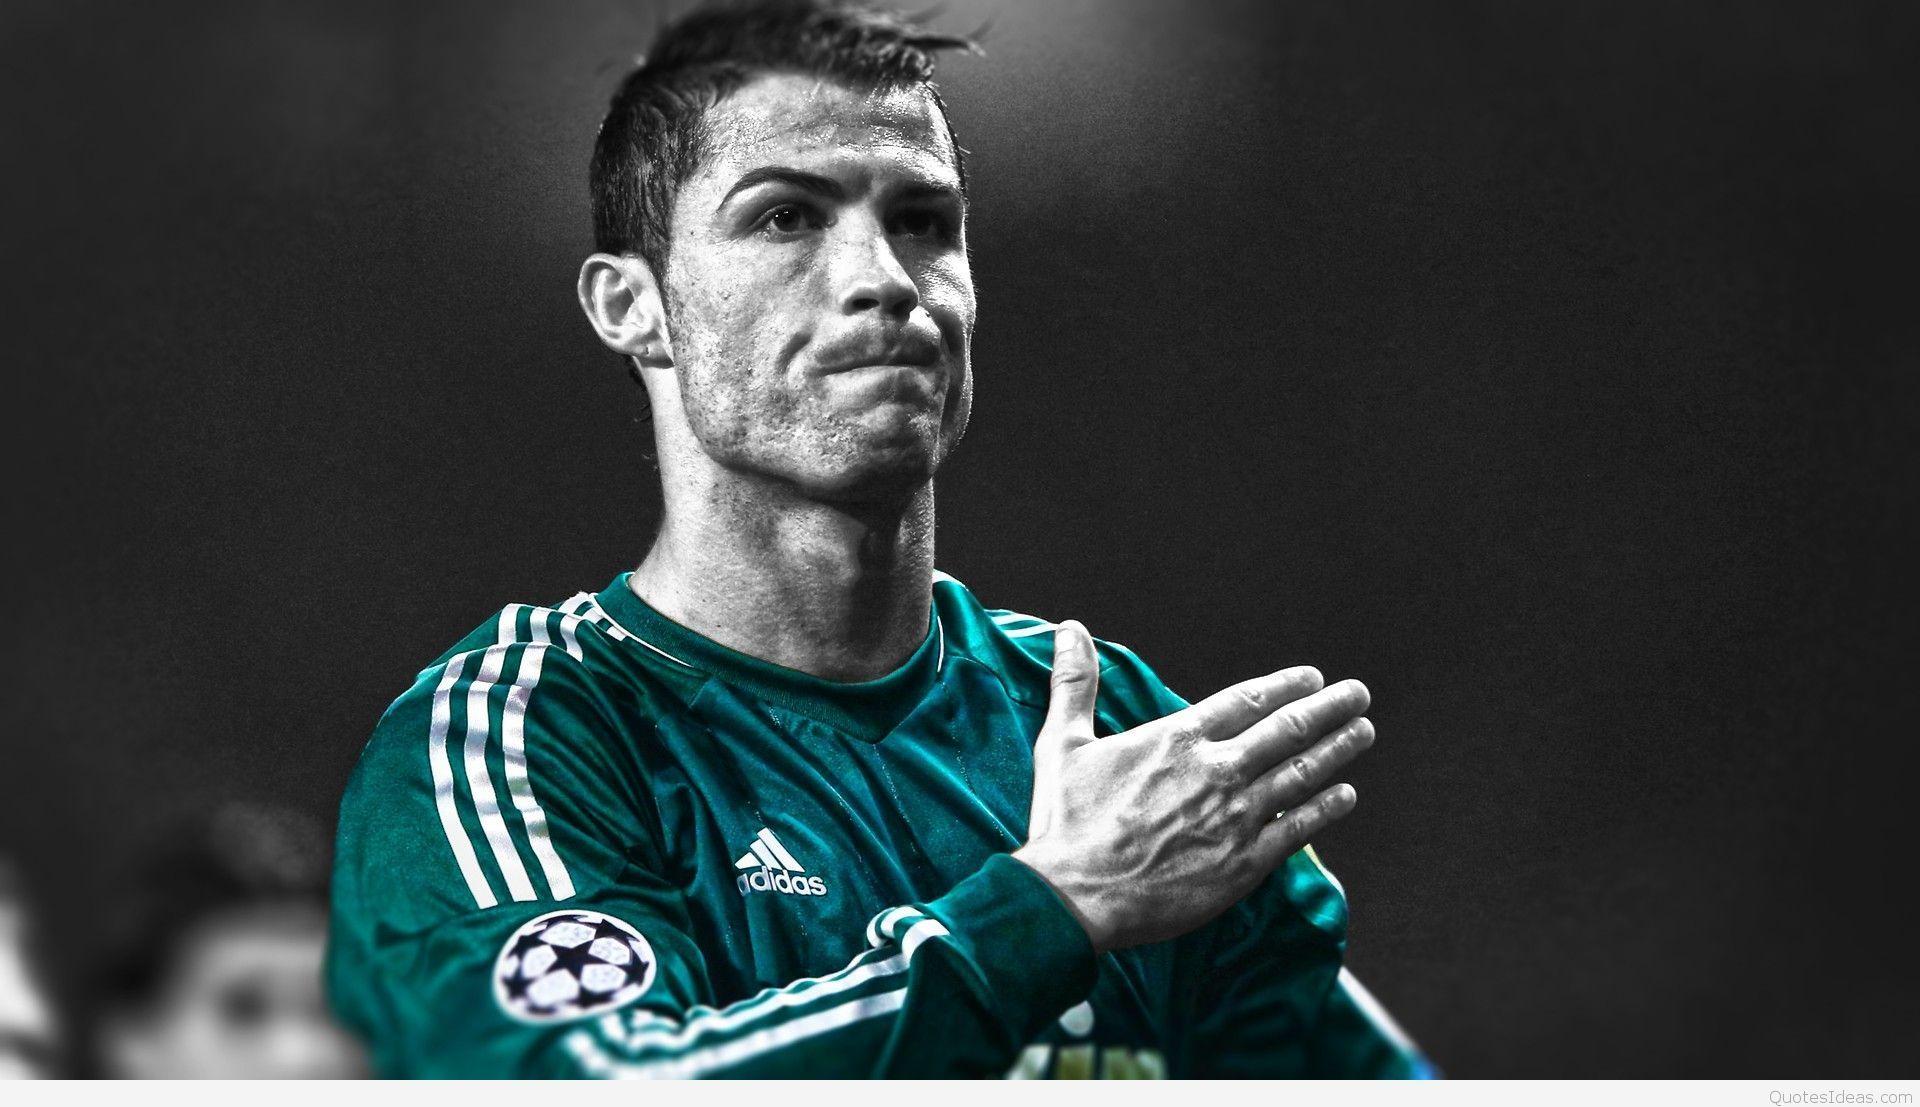 Amazing Cristiano Ronaldo 3D wallpaper